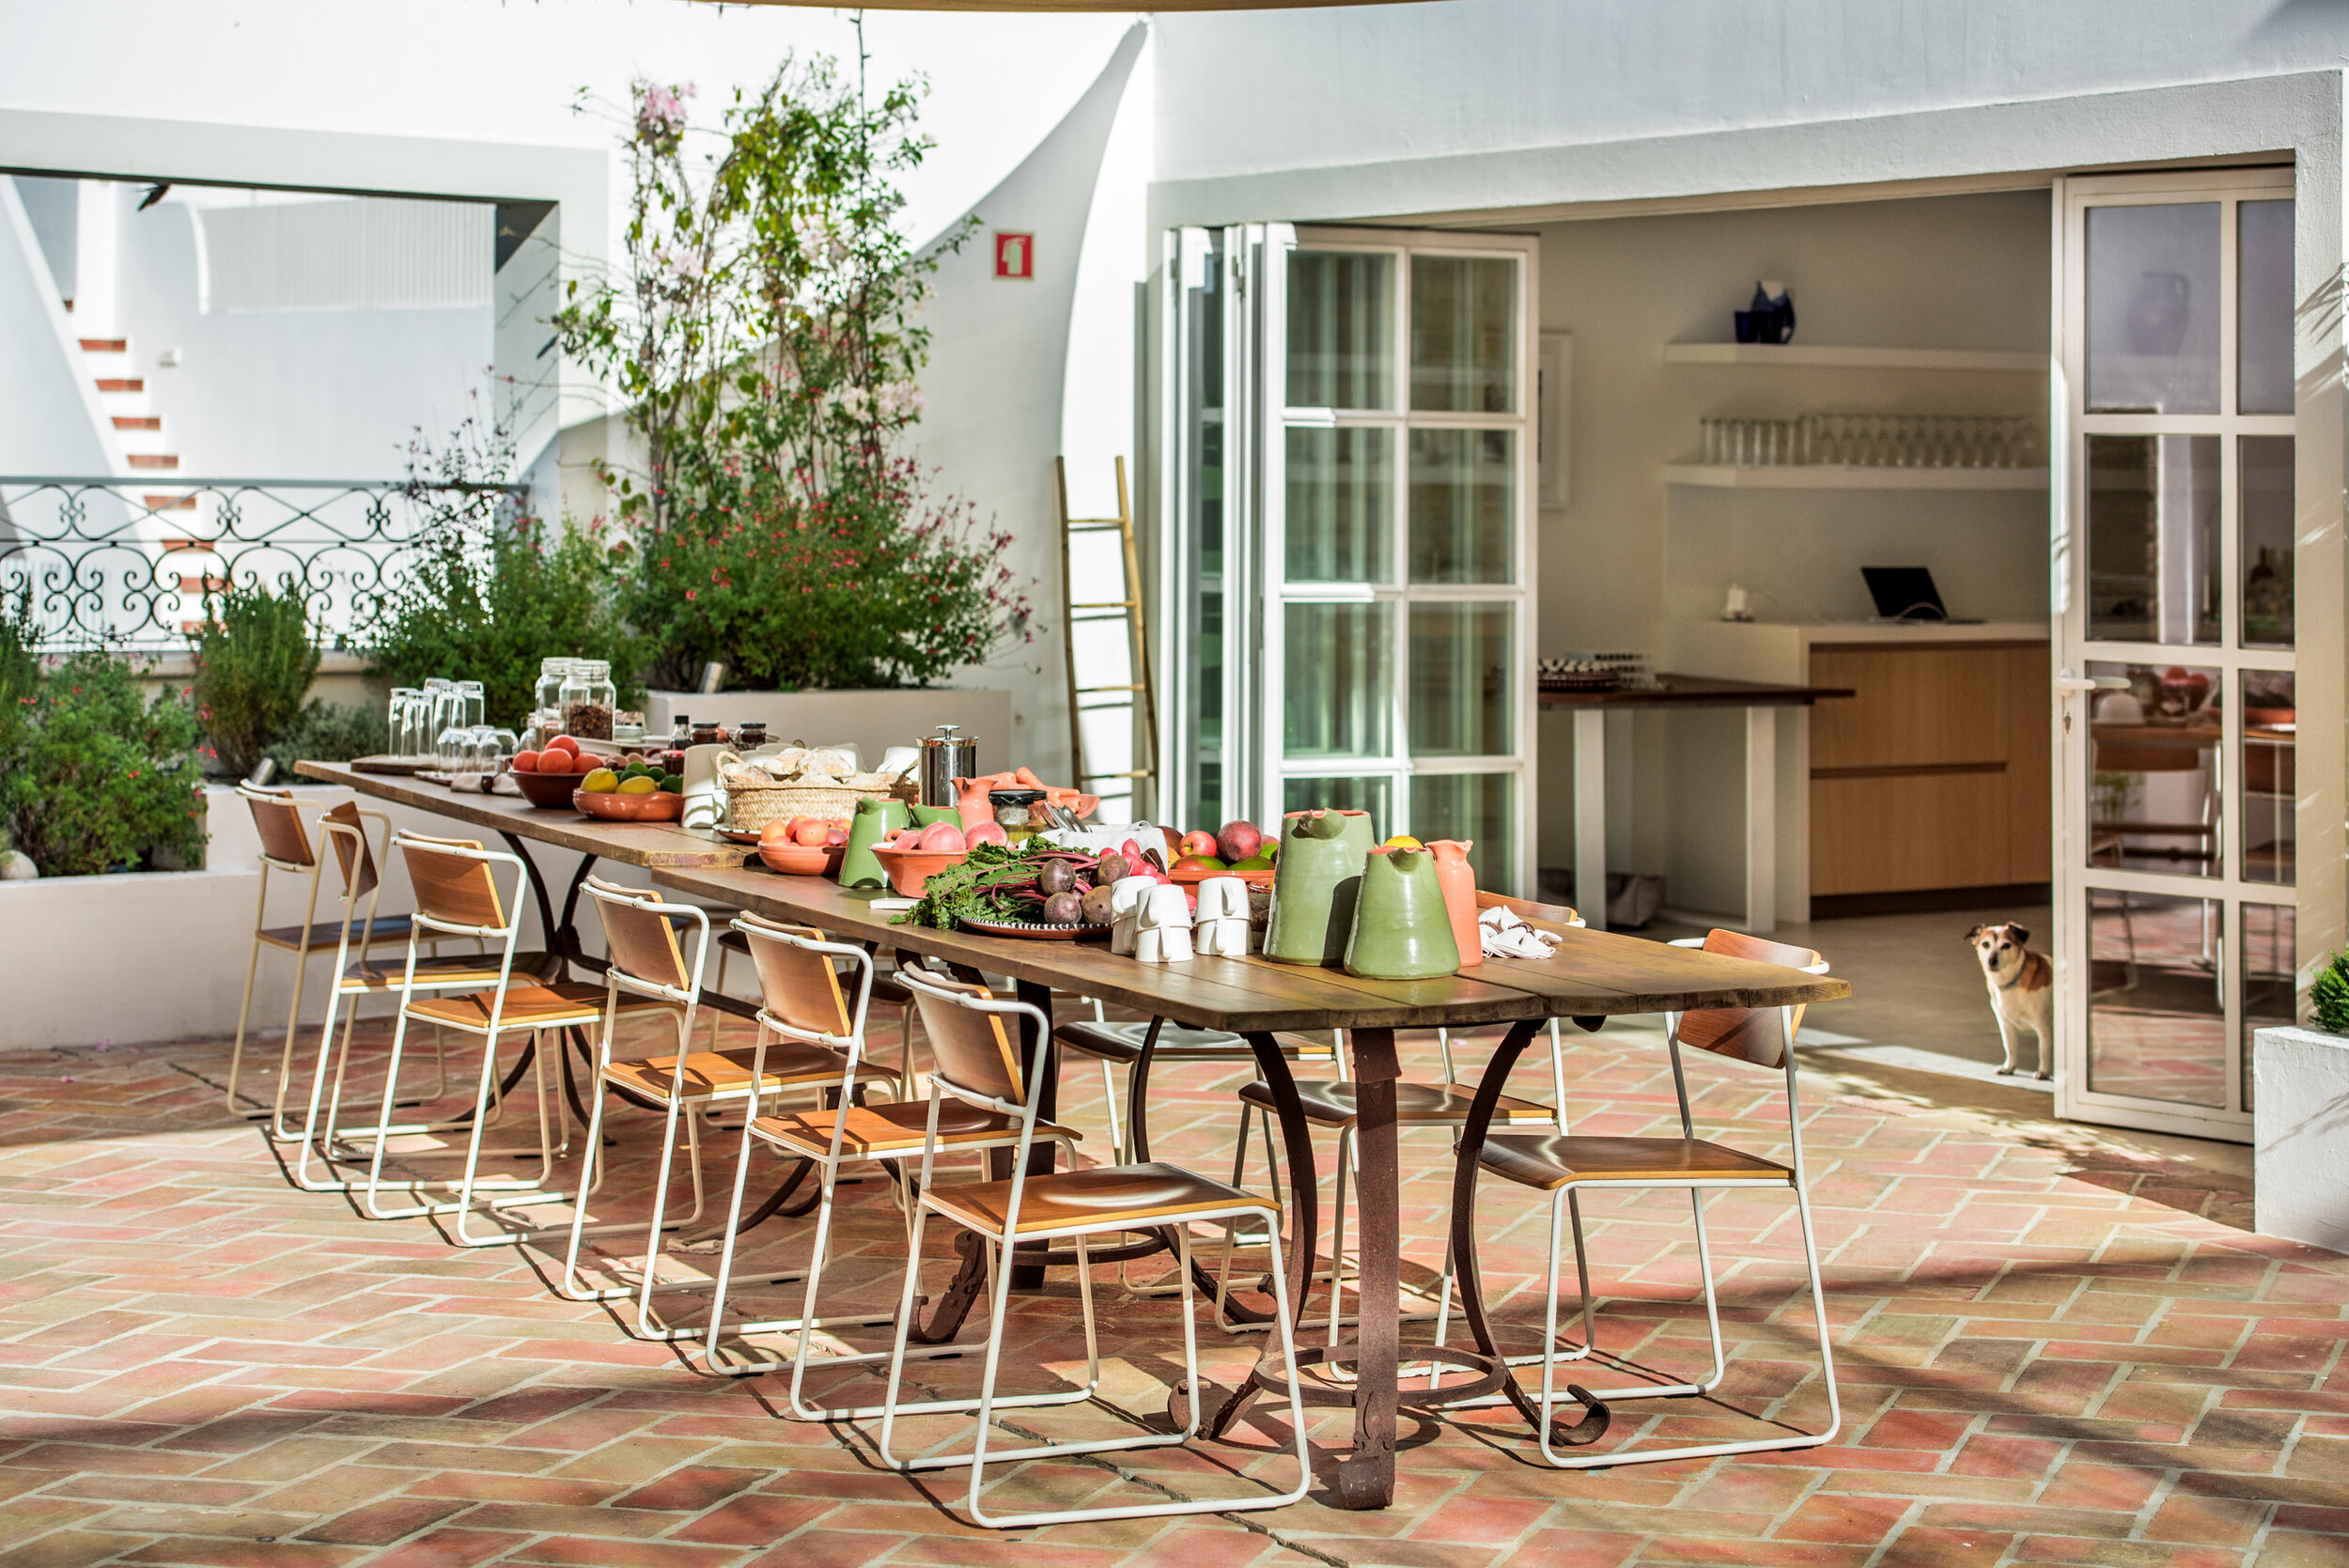 Kitchen terrace - Casa Fuzetta (61).jpg